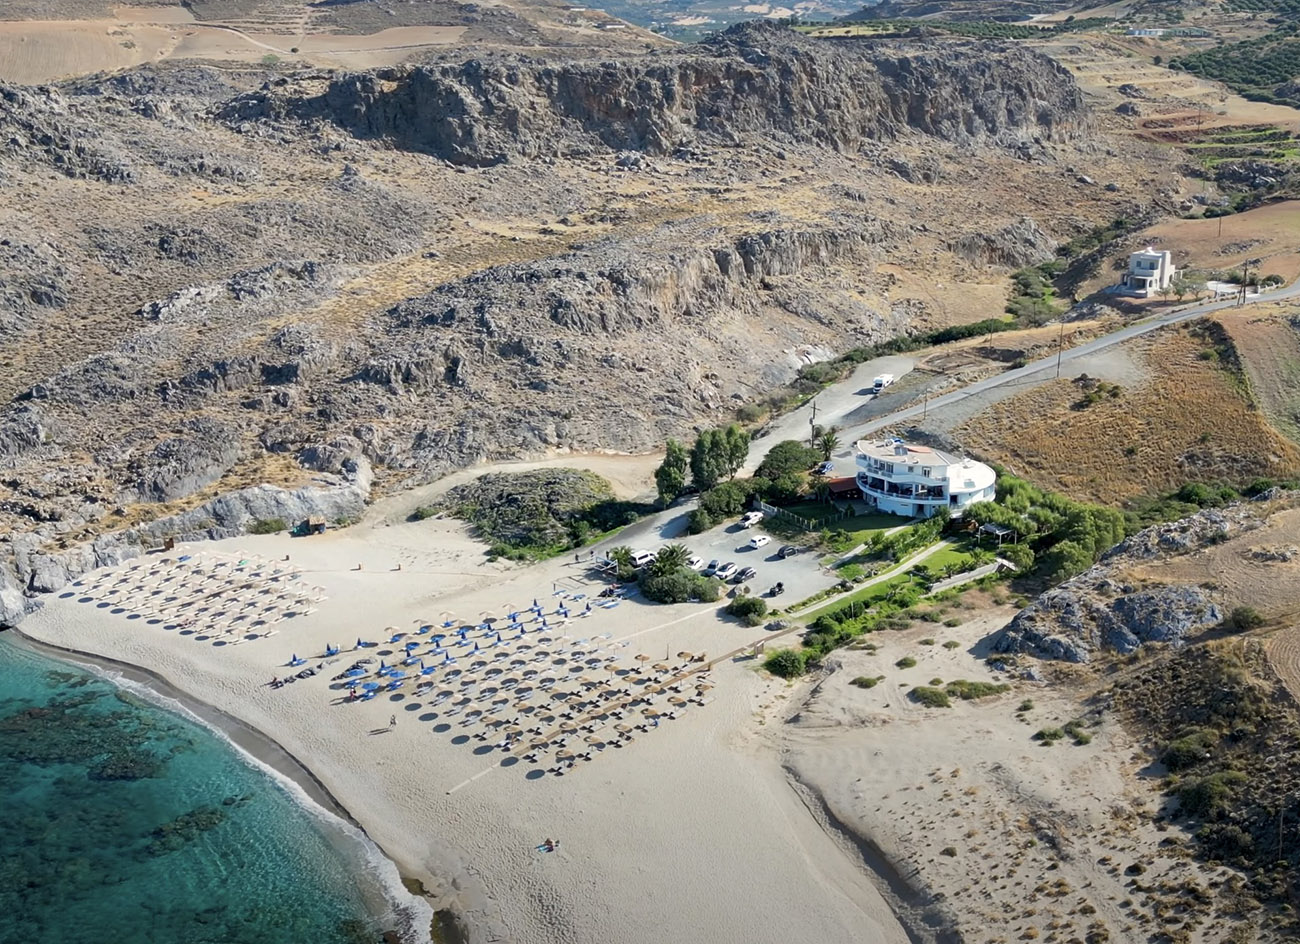 Σχοινάρια: Η εκπληκτική παραλία της Κρήτης με το ρεκόρ διαύγειας νερού στα 40 μέτρα